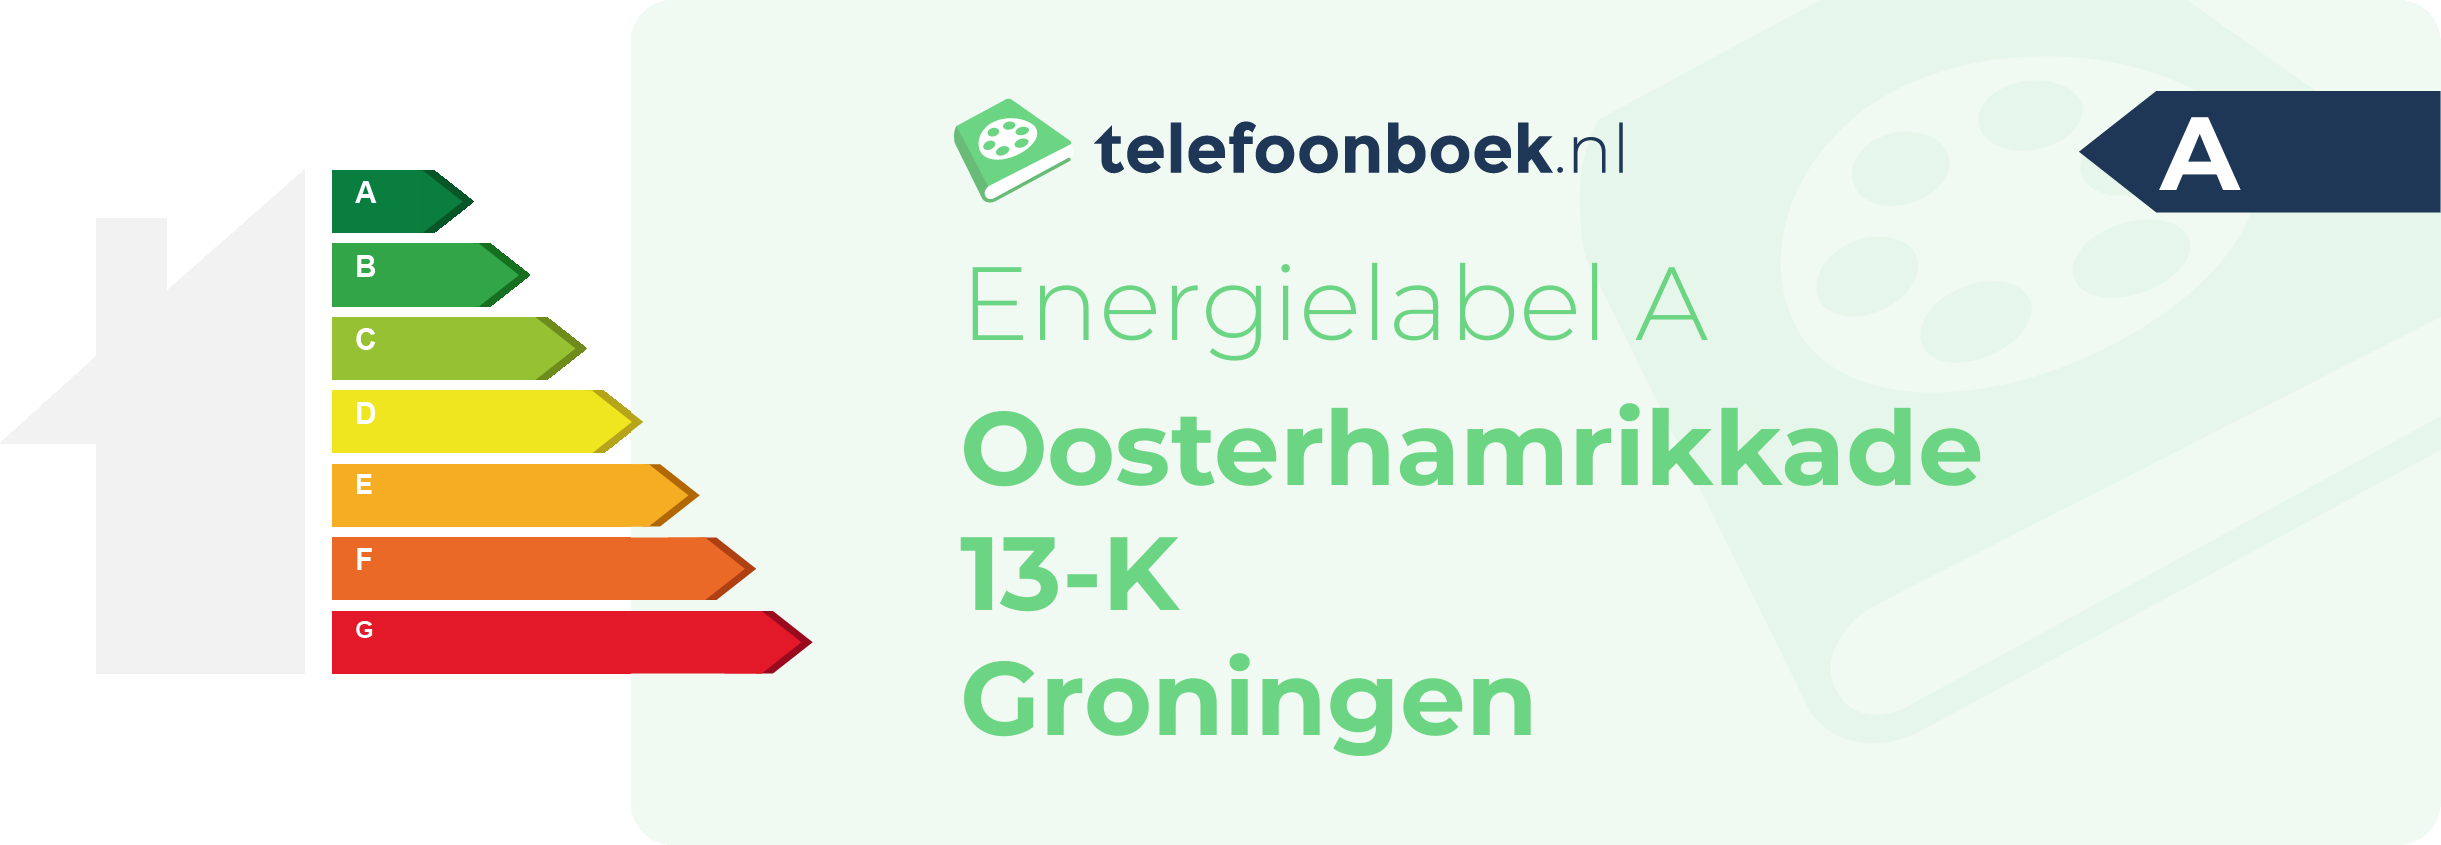 Energielabel Oosterhamrikkade 13-K Groningen